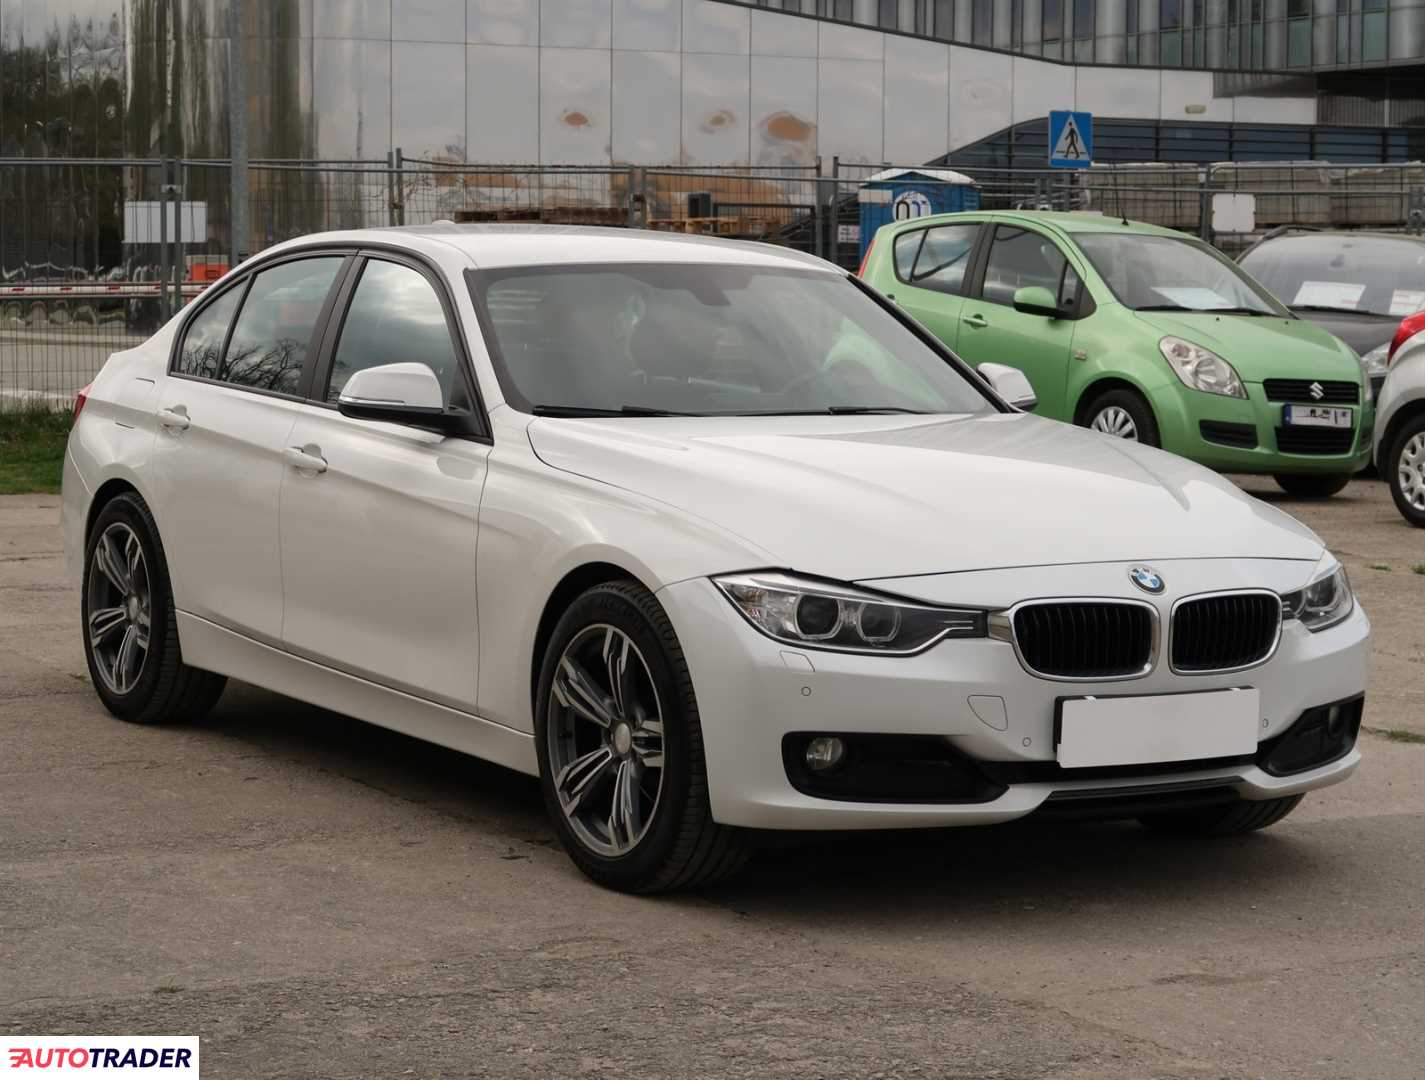 BMW 316 2012 1.6 134 KM